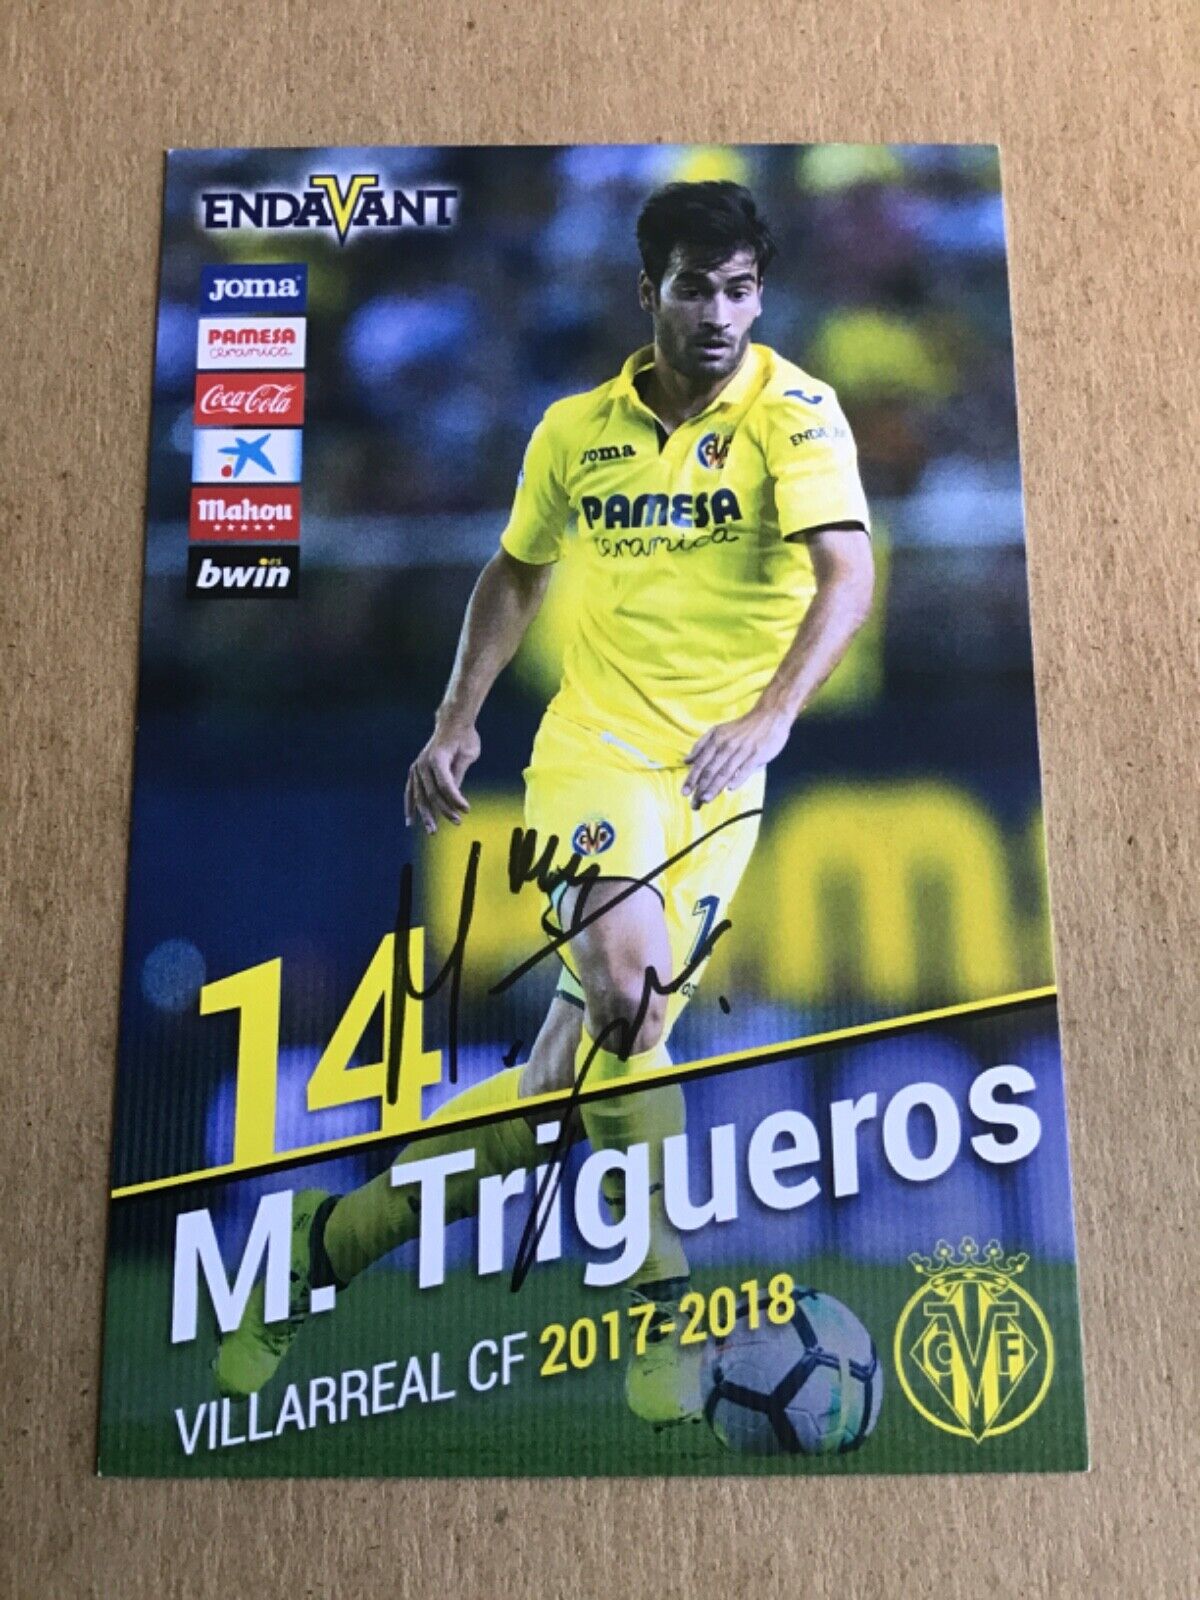 Manuel Trigueros, Spain 🇪🇸 Villarreal CF 2017/18 hand signed